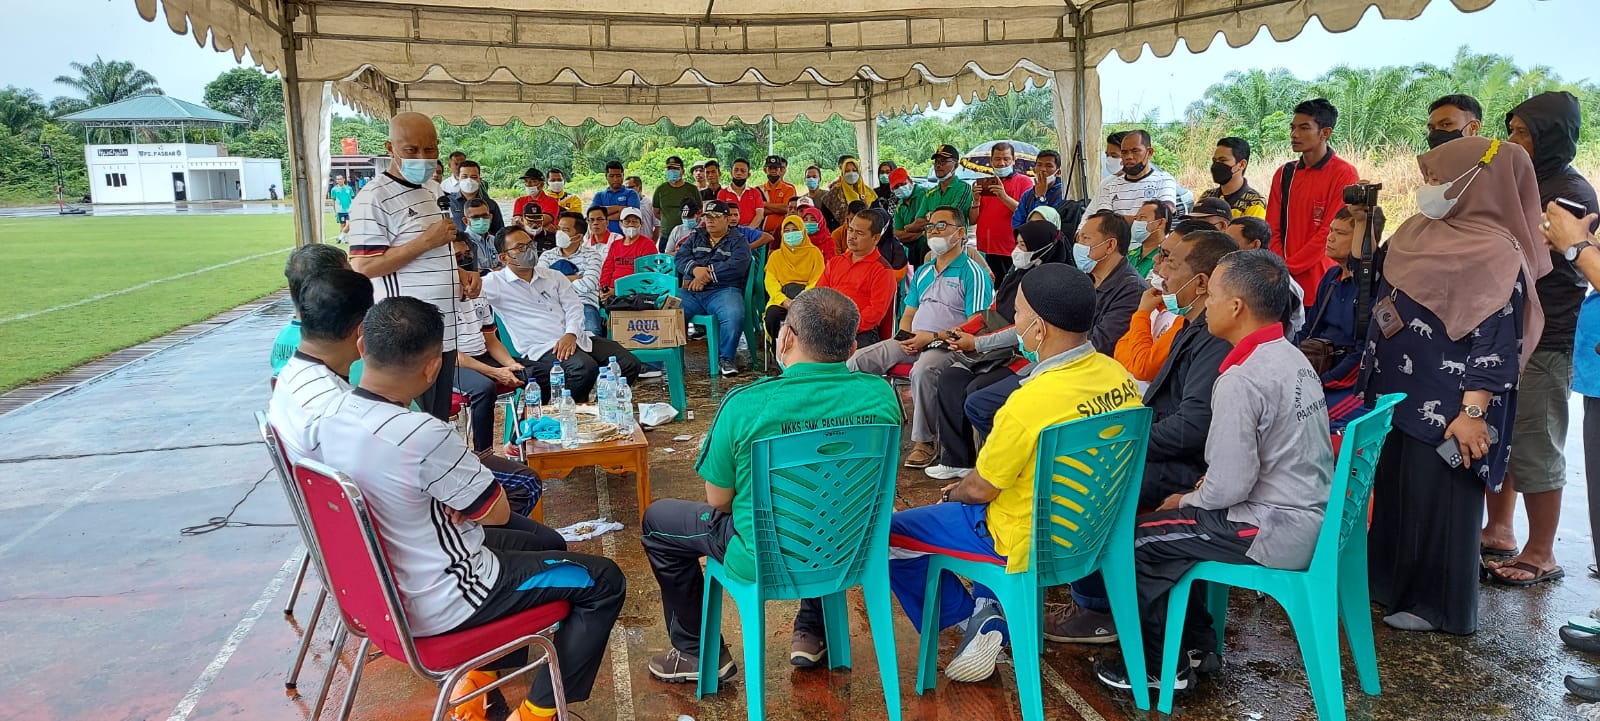 Gubernur Sumbar, Mahyeldi, dalam pertemuan dengan beberapa kepala sekolah di Pasaman Barat, di Lapangan Bolakaki Tuah Bersama Padang Tujuah - Pasaman Barat, Rabu (1/9/2021).